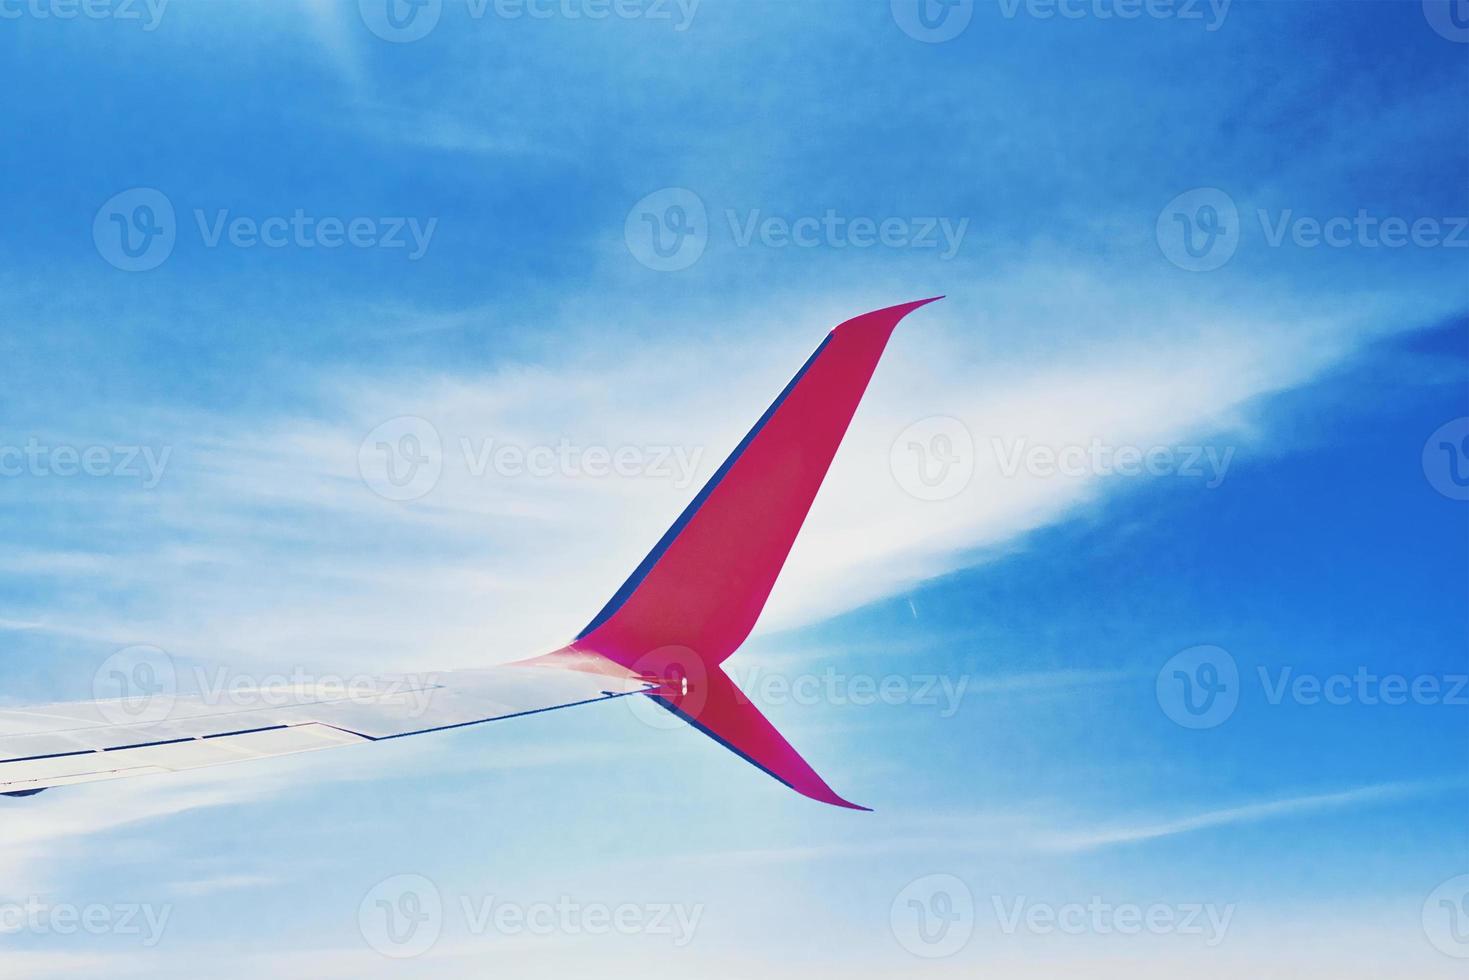 Flugzeugflügel und blauer Himmel mit Wolken, Blick aus dem Flugzeugfenster foto